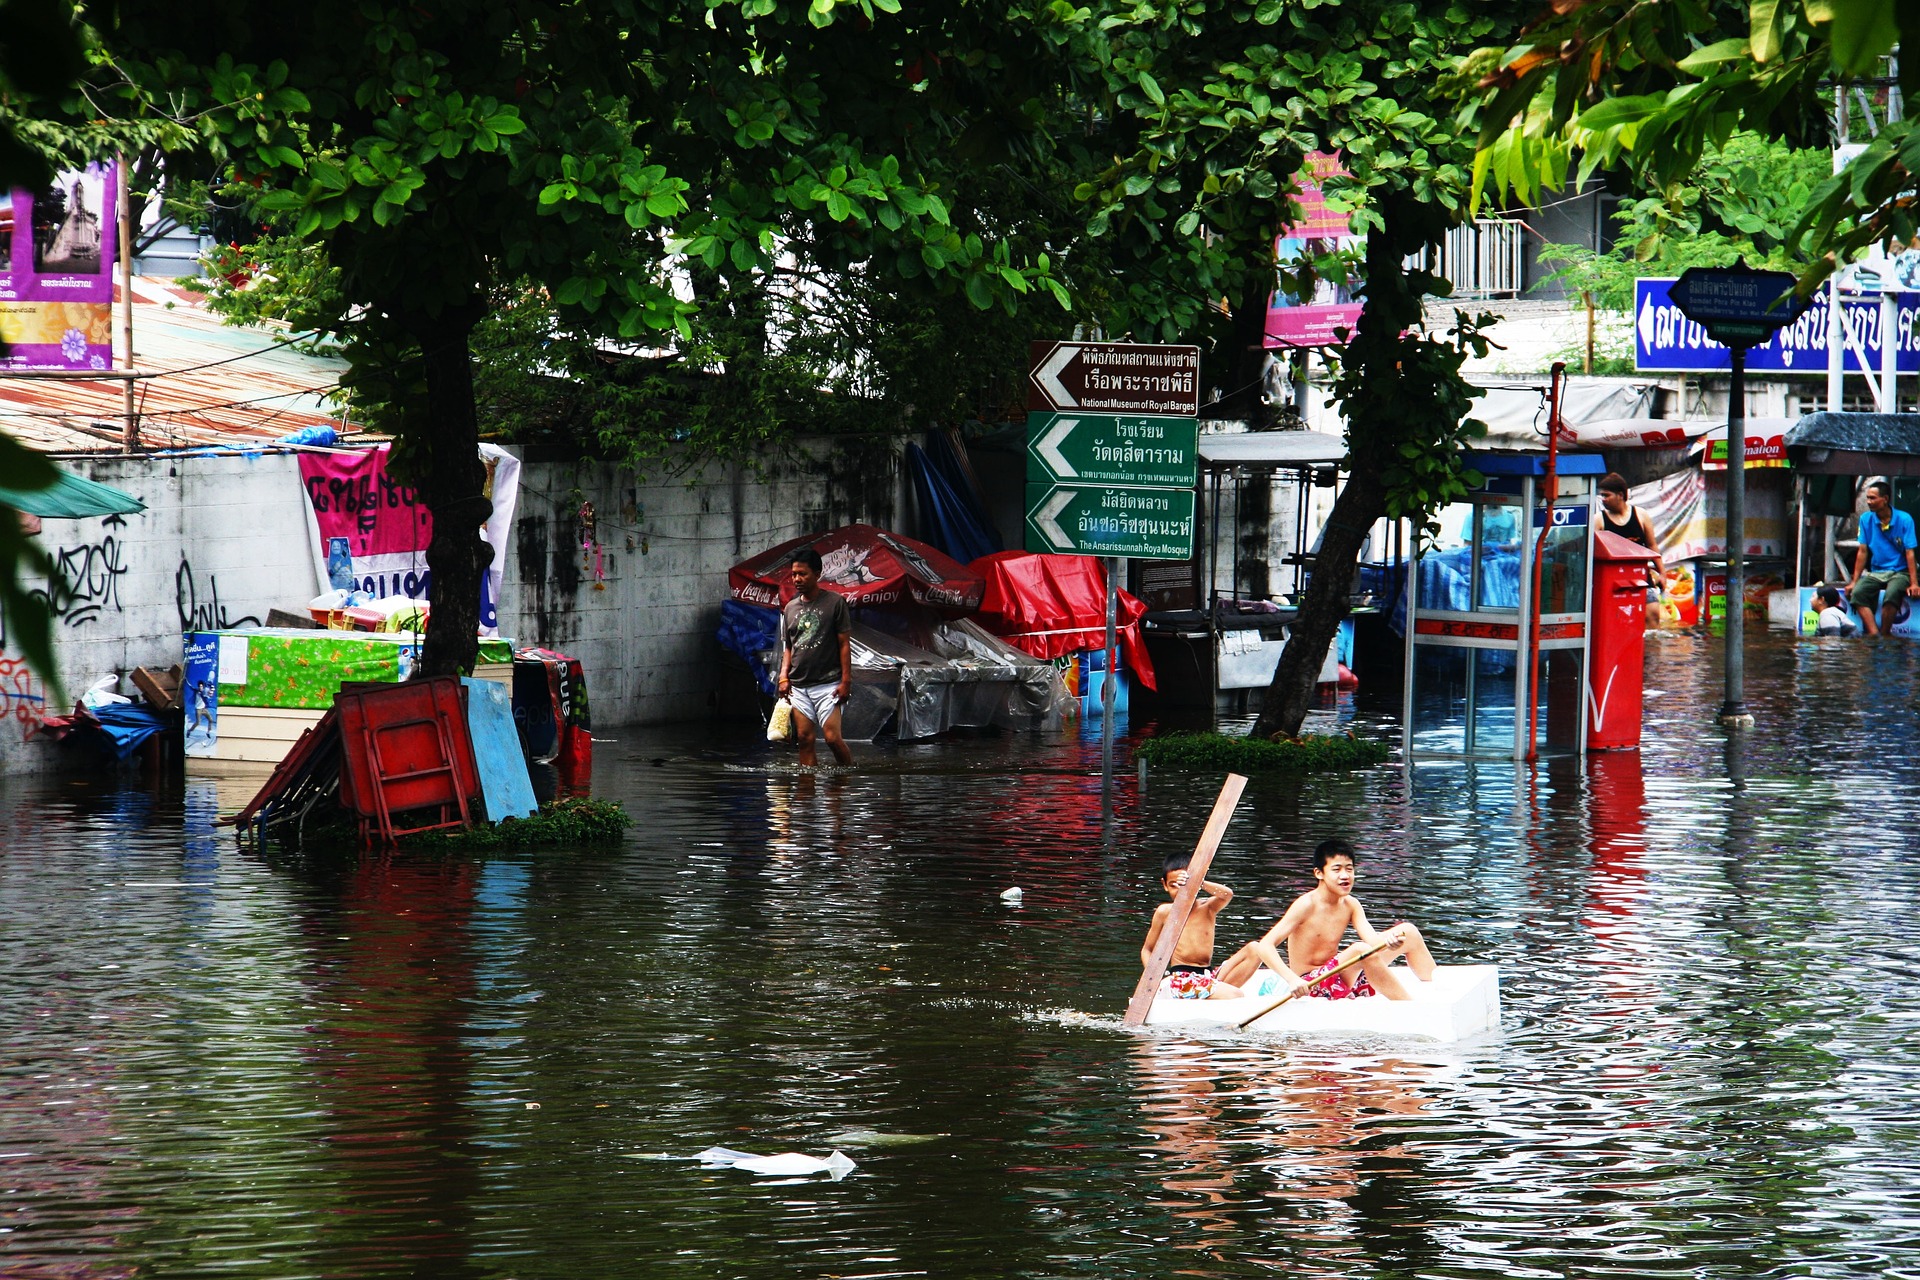 Meer en heviger overstromingen in India en Pakistan door extreme regenval. Ook daarin was het afgelopen jaar een recordjaar.